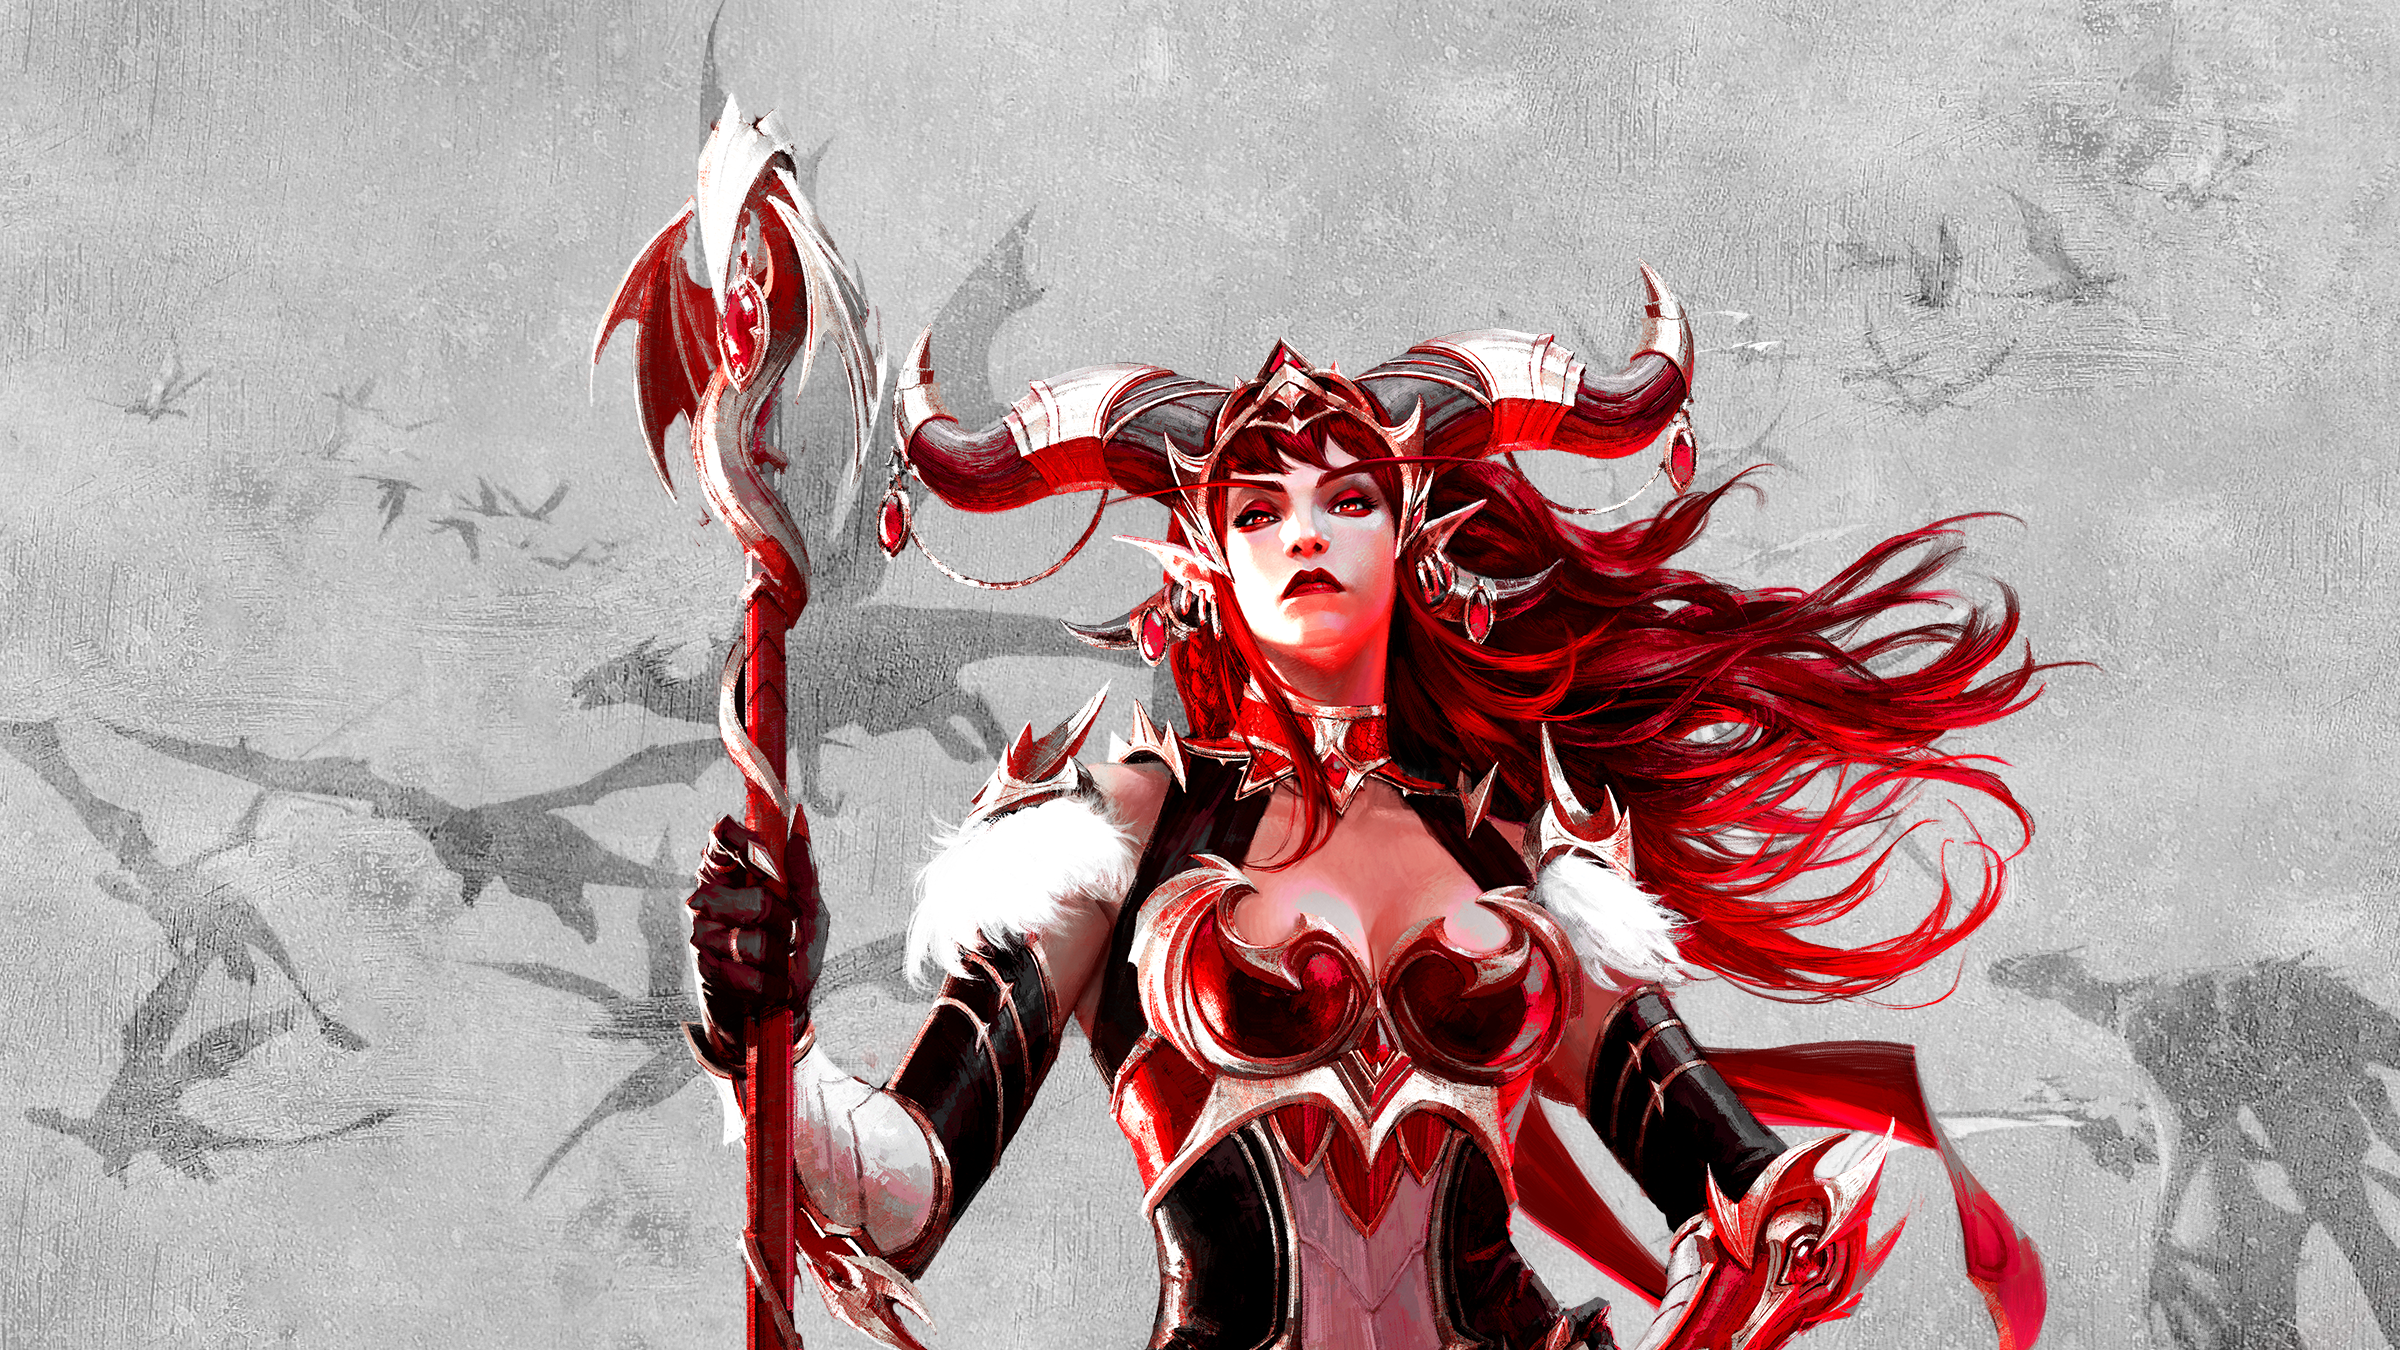 Alexstrasza World Of Warcraft Fantasy Art Redhead Red Eyes Pointy Ears Horns Dragon 2400x1350